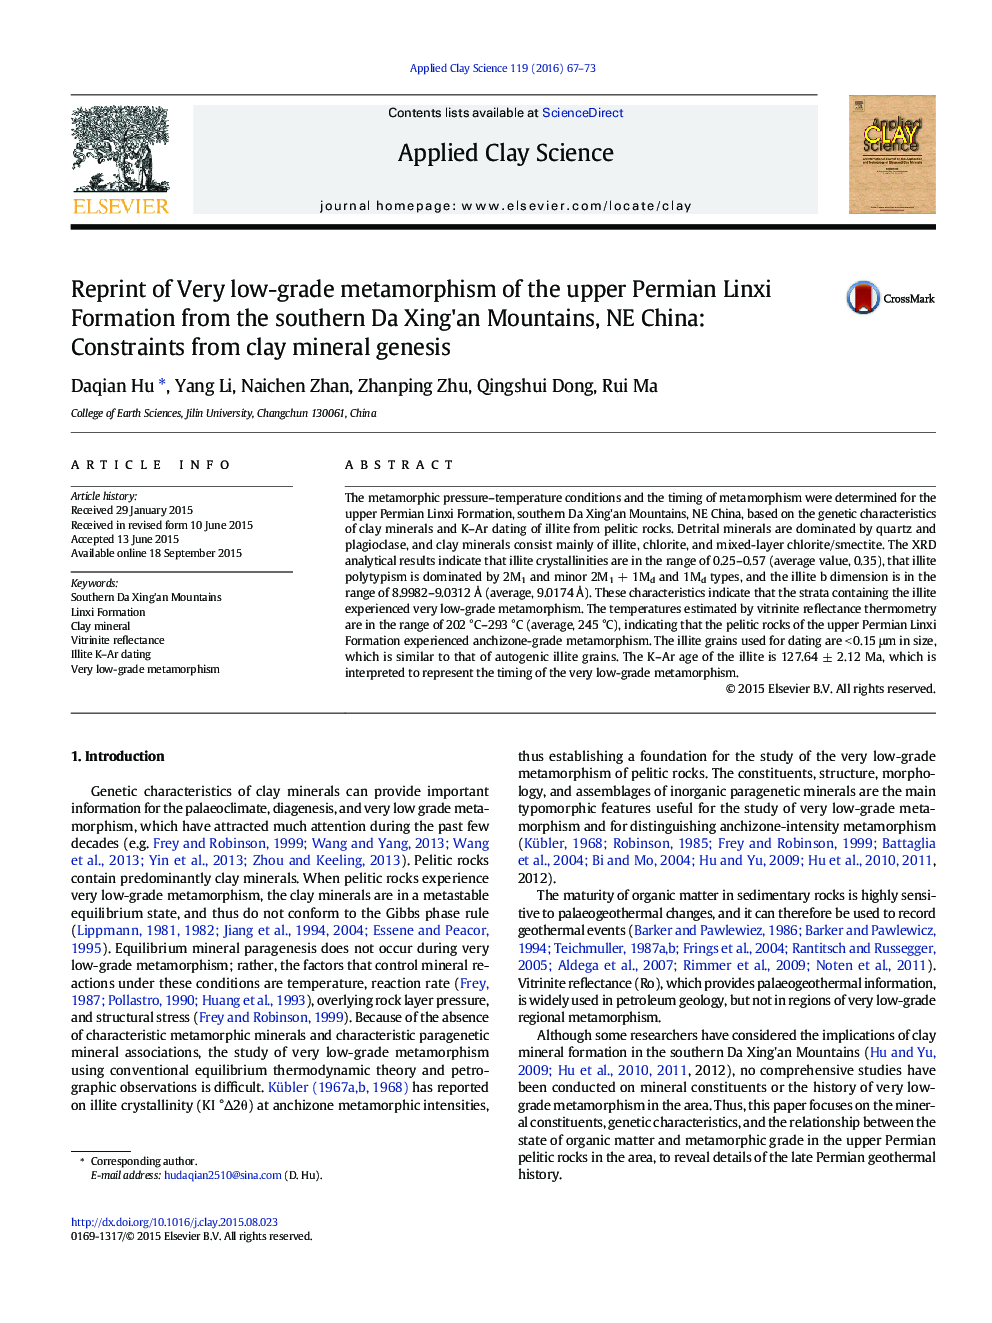 چاپ مجدد دگرگونی بسیار پایین در سازند لینکی پرمین از جنوب کوه های دا سین کن، شمال غربی چین: محدودیت های ژنتیک معدن رس 